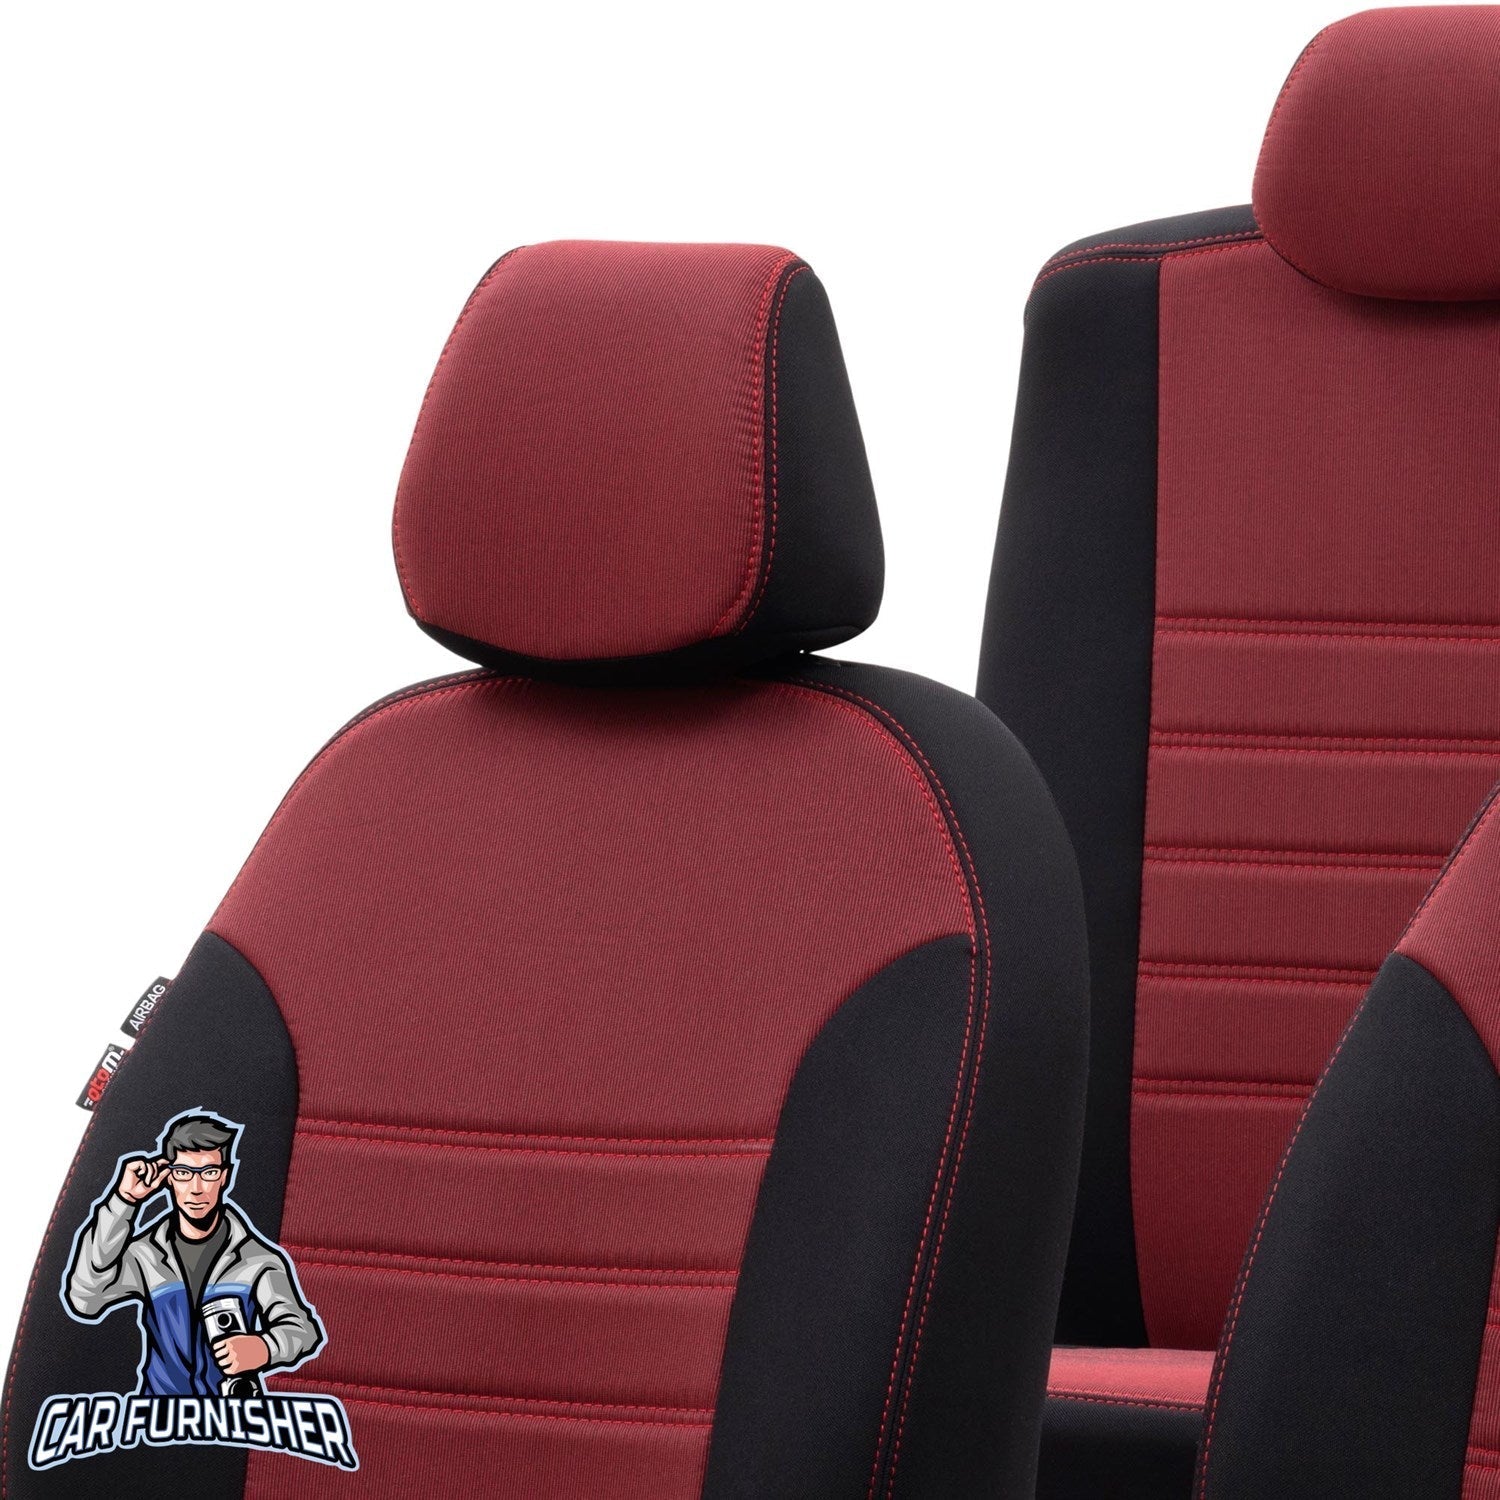 Bmw X1 Seat Cover Original Jacquard Design Red Jacquard Fabric